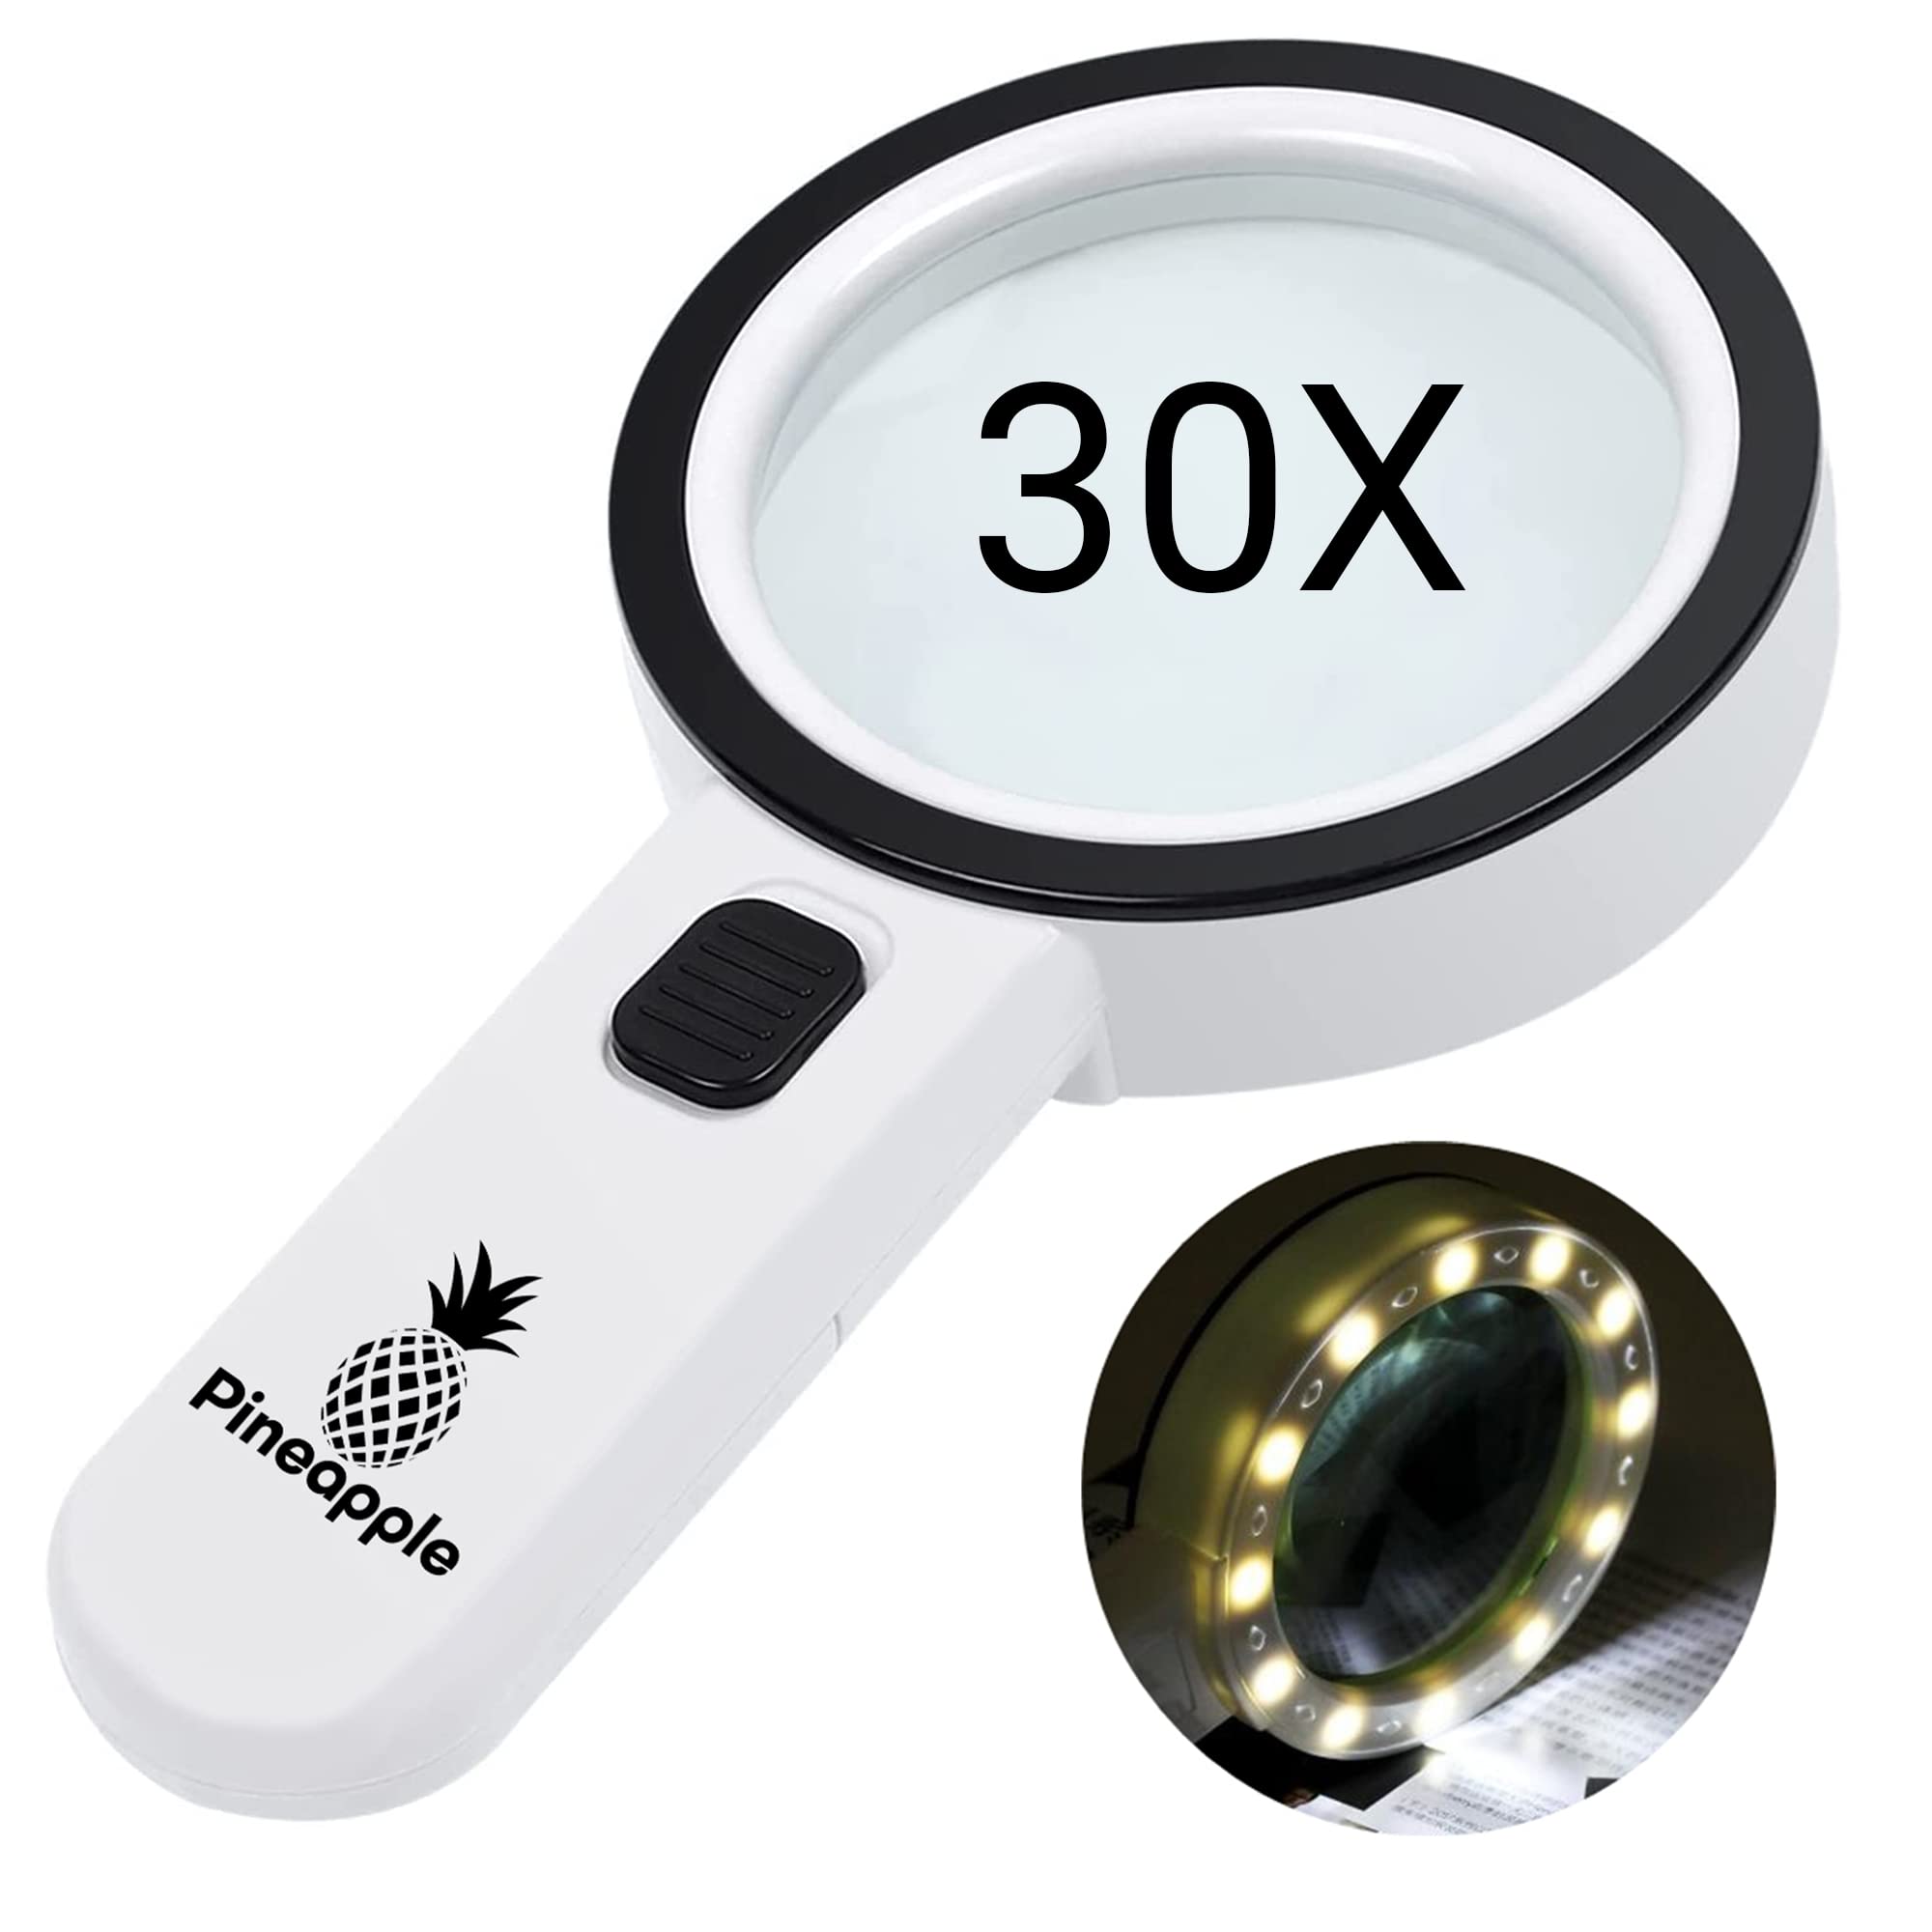 30X Handheld Magnifying Glass 12 Bright LED Light Illuminated